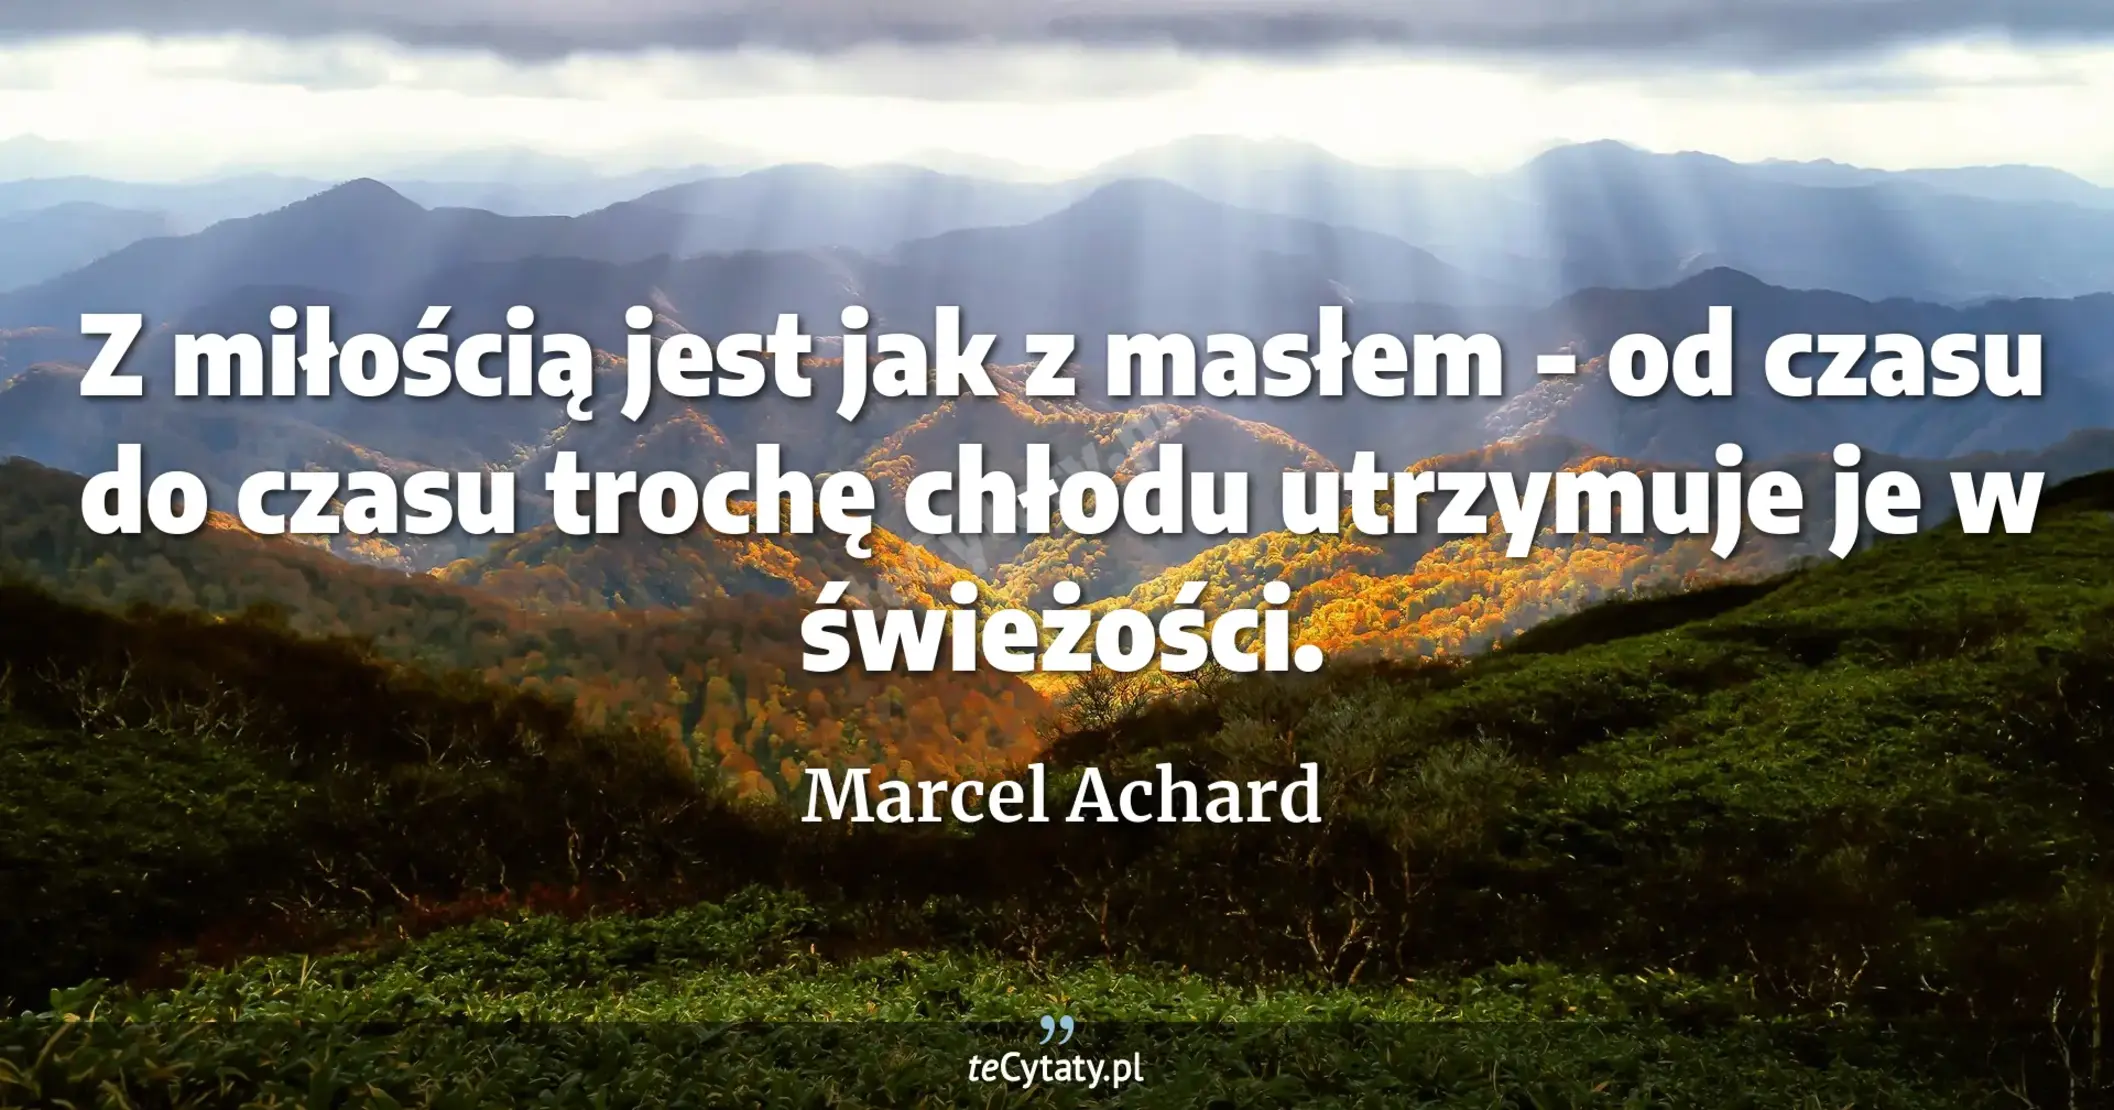 Z miłością jest jak z masłem - od czasu do czasu trochę chłodu utrzymuje je w świeżości. - Marcel Achard